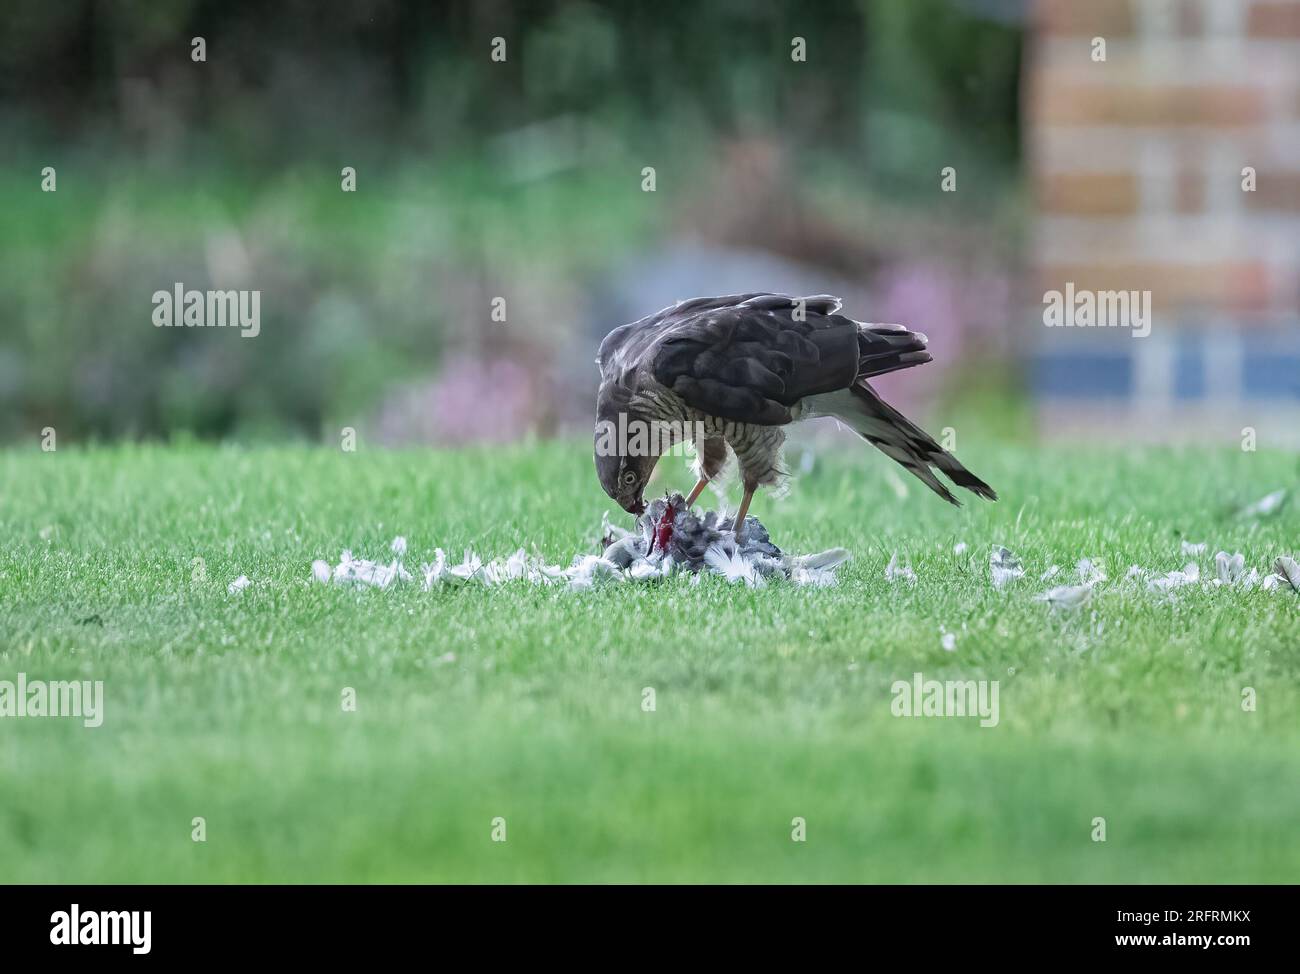 Ein Weibchen Sparrowhawk (Accipiter nisus) mit ihrem blutigen Fang einer Taube. Eine grauenhafte Szene, die sie in einem Suffolk-Garten zerrissen hat. UK Stockfoto